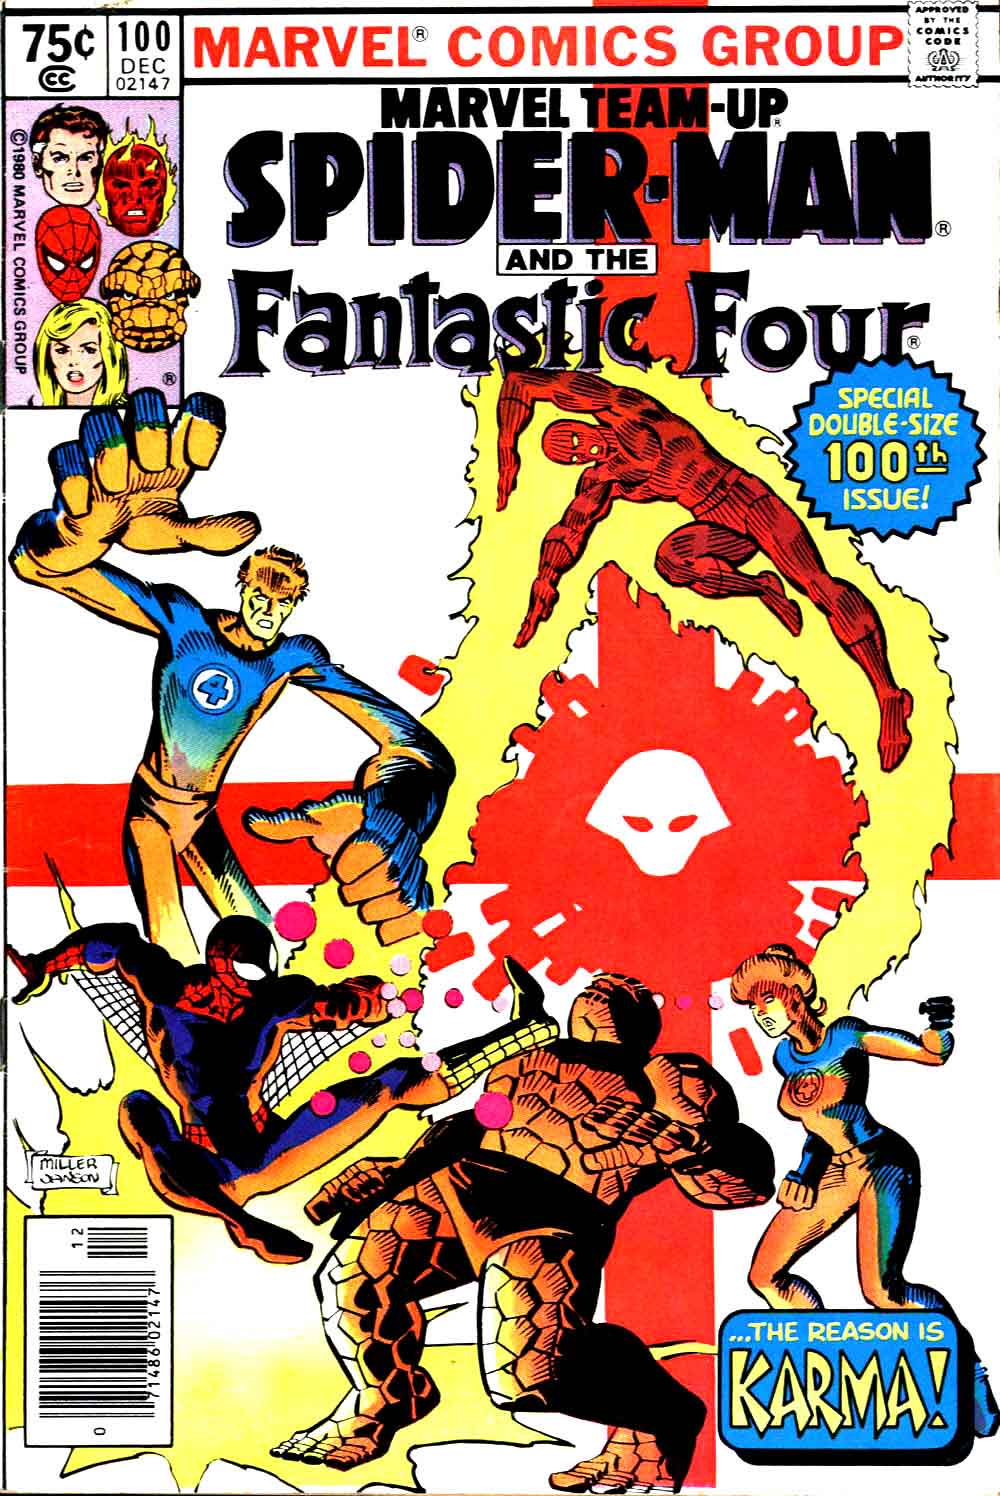 Marvel Team-Up #100 marvel 1980s comic book cover art by Frank Miller John Byrne